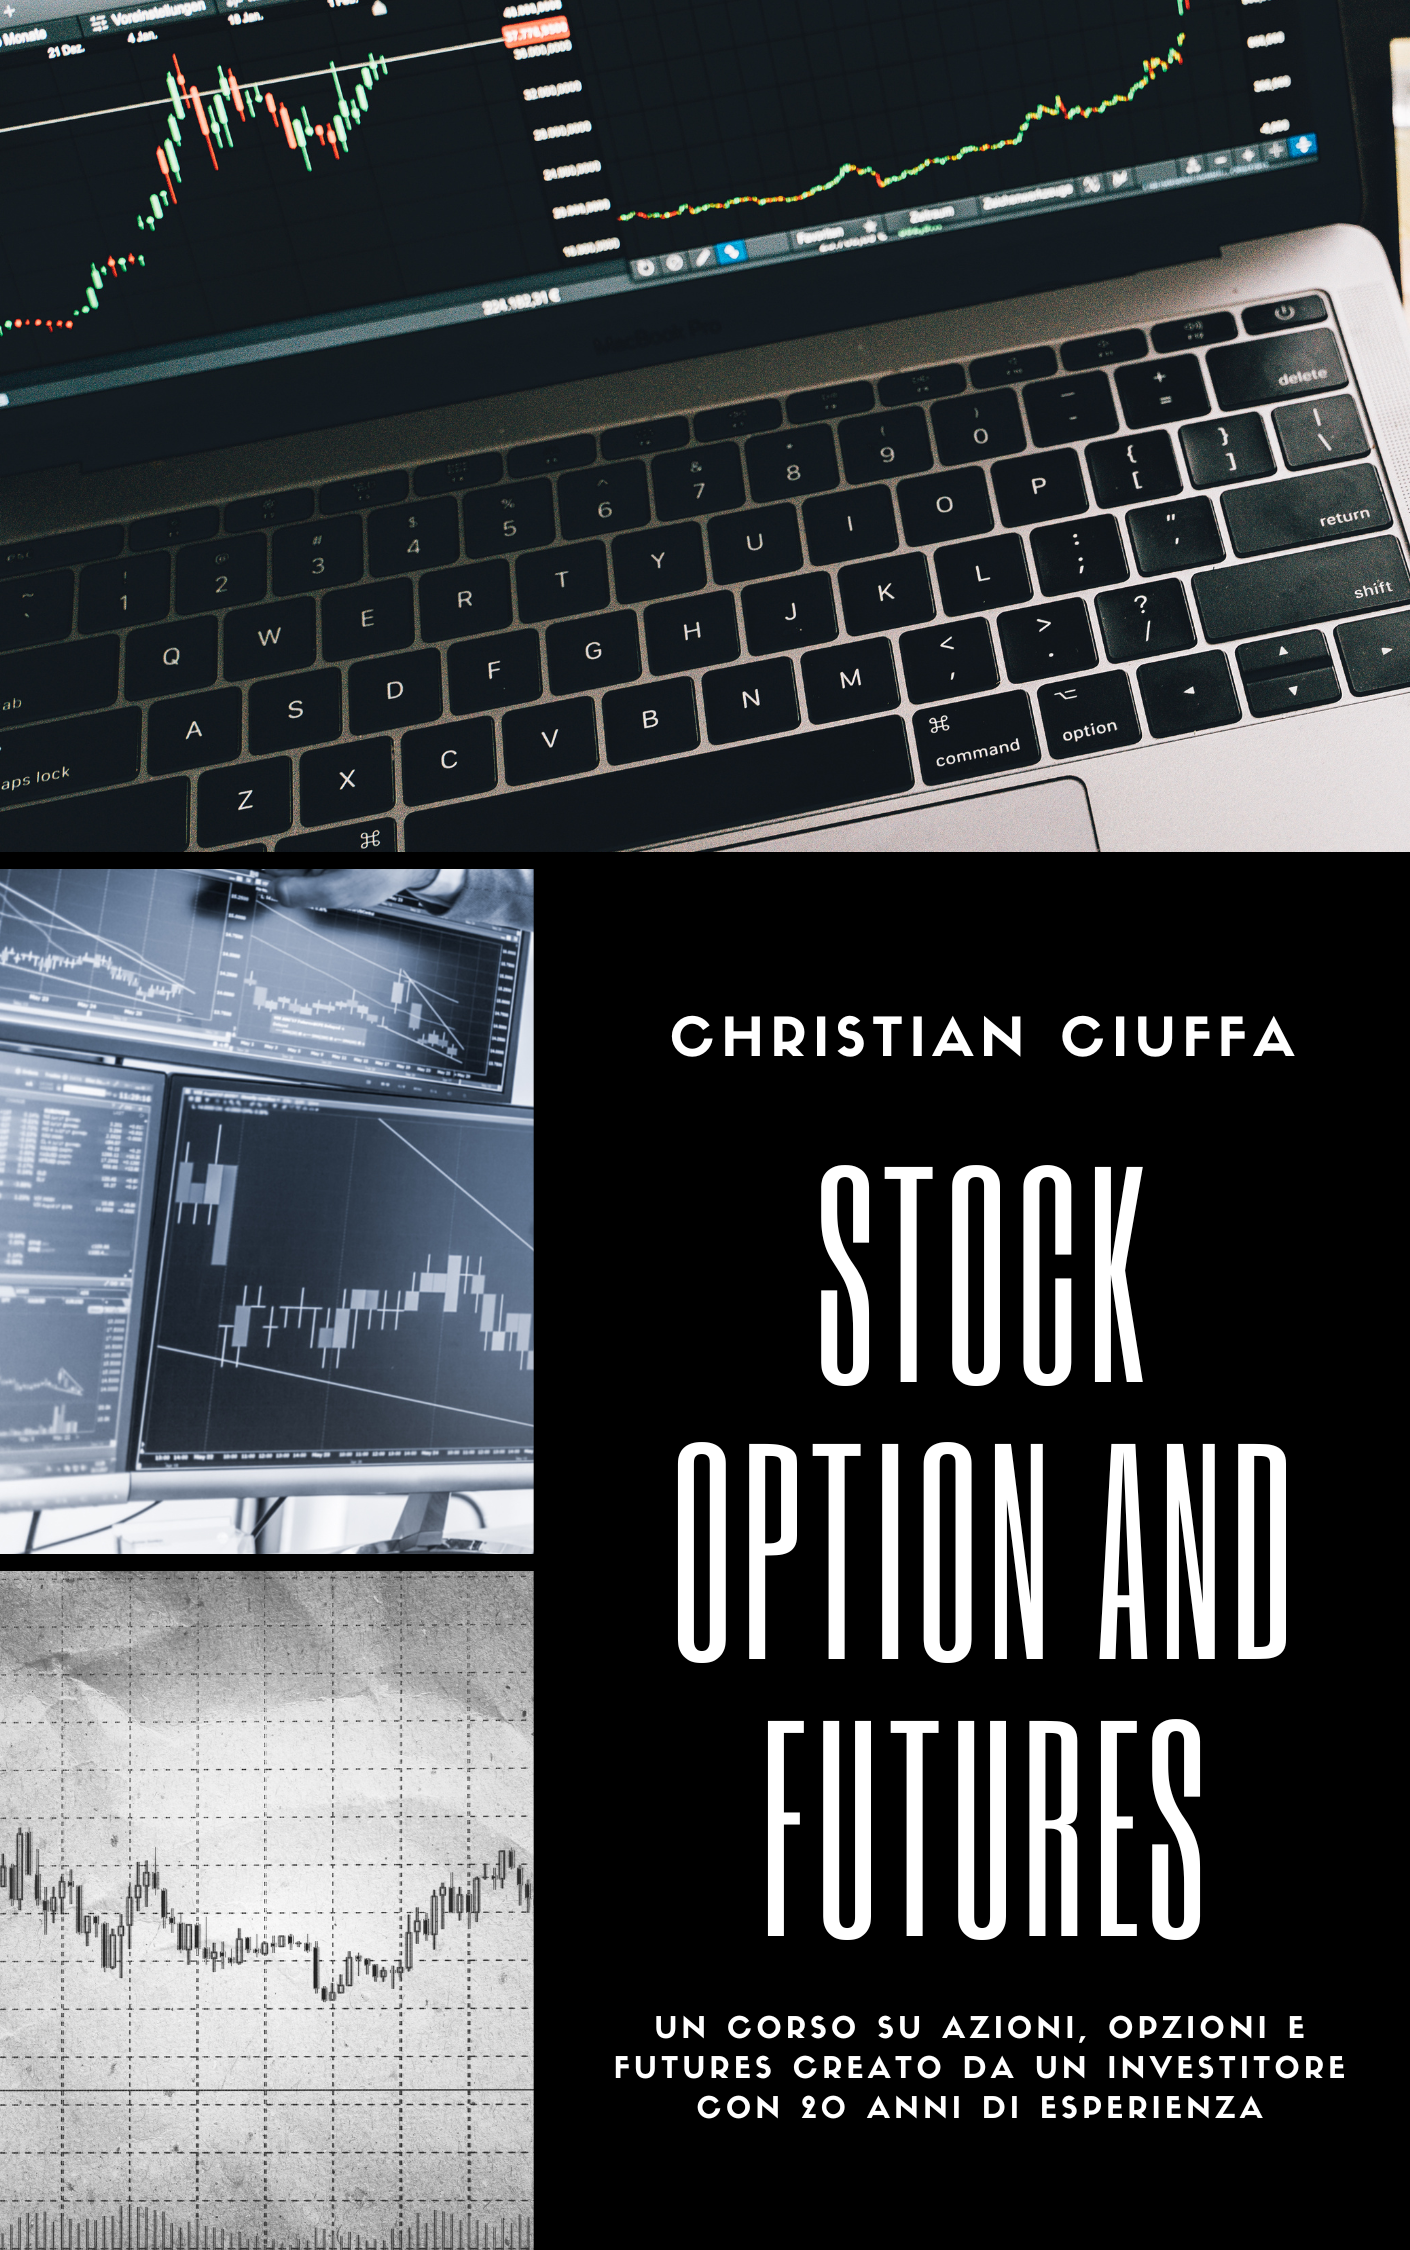 christian-ciuffa-consigli-libri-trading-investimenti-harmonic trading-stock-and -option-futures